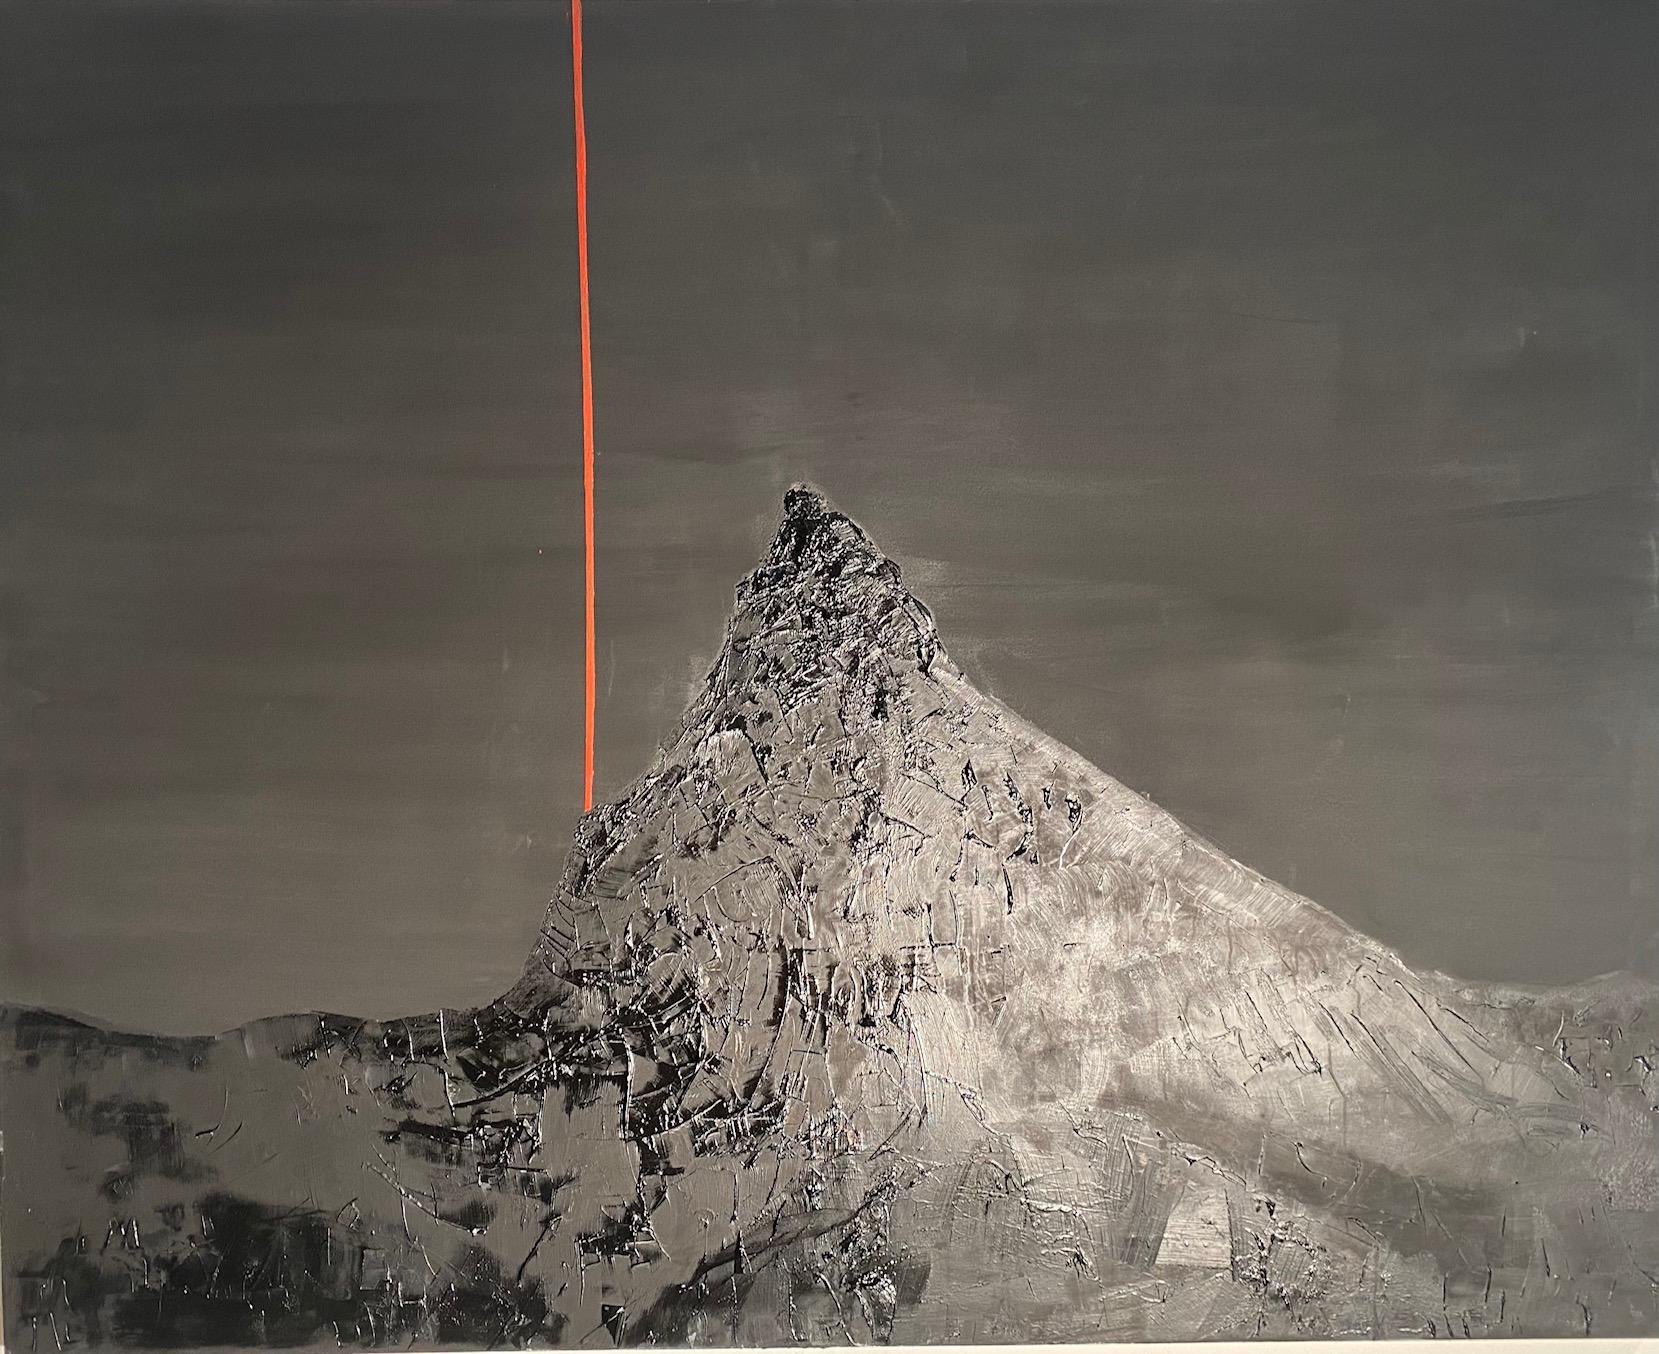 Animal Painting Willi Bucher - Matterhorn - gamme de montagnes noires et blanches expressionnistes contemporaines avec rouge